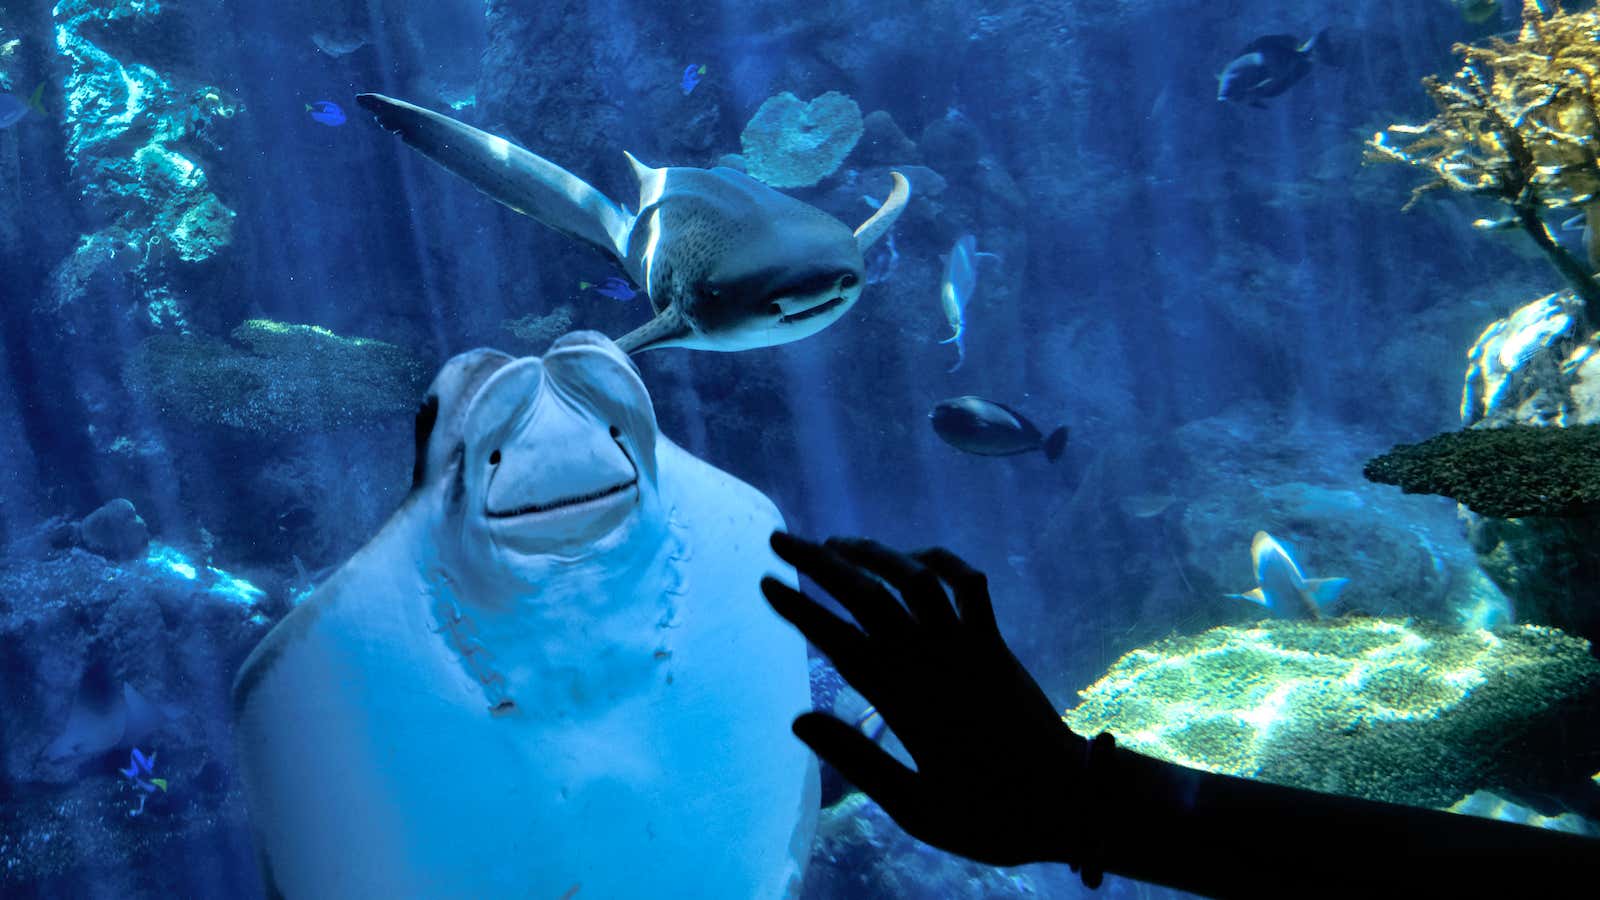 Are aquariums ethical?